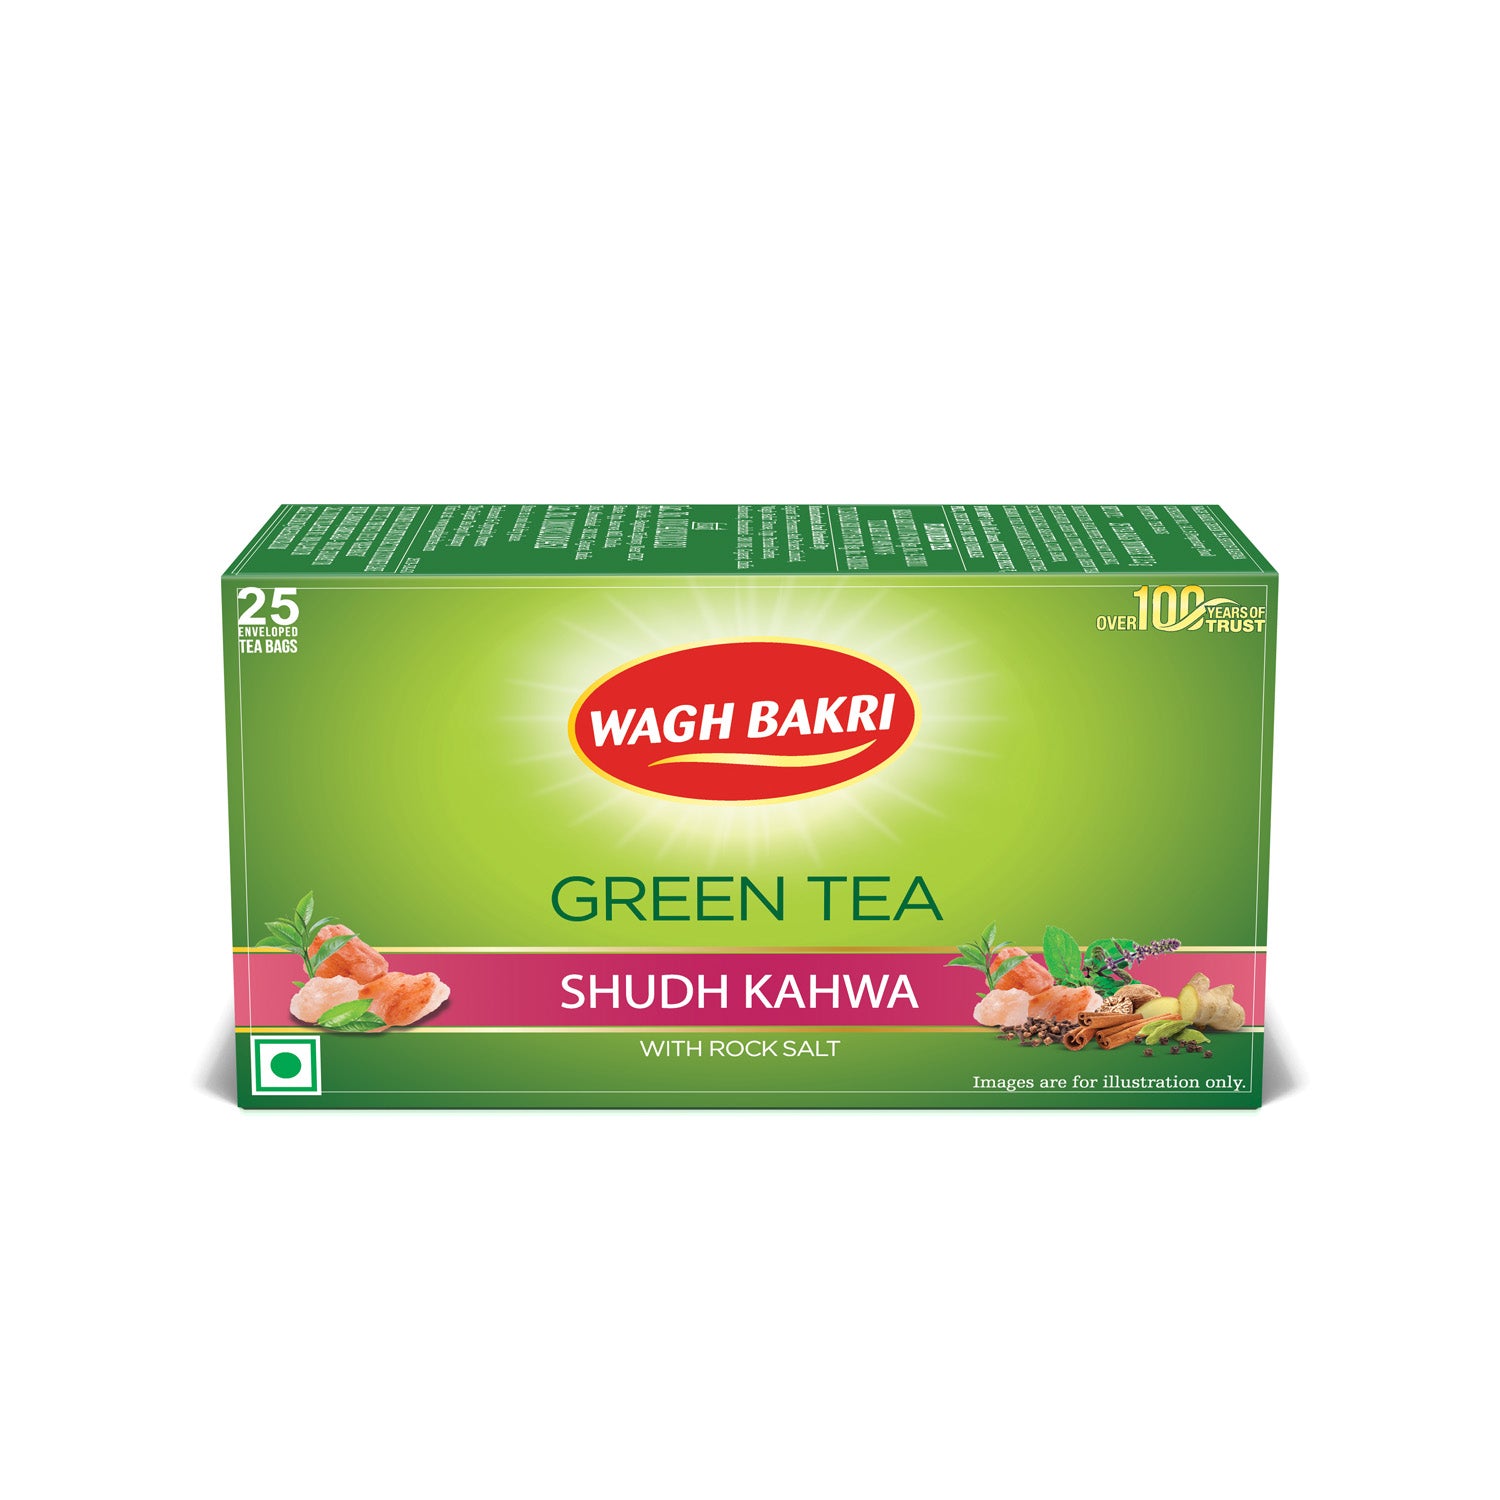 Wagh Bakri Shudh Kahwa Green Tea Bags